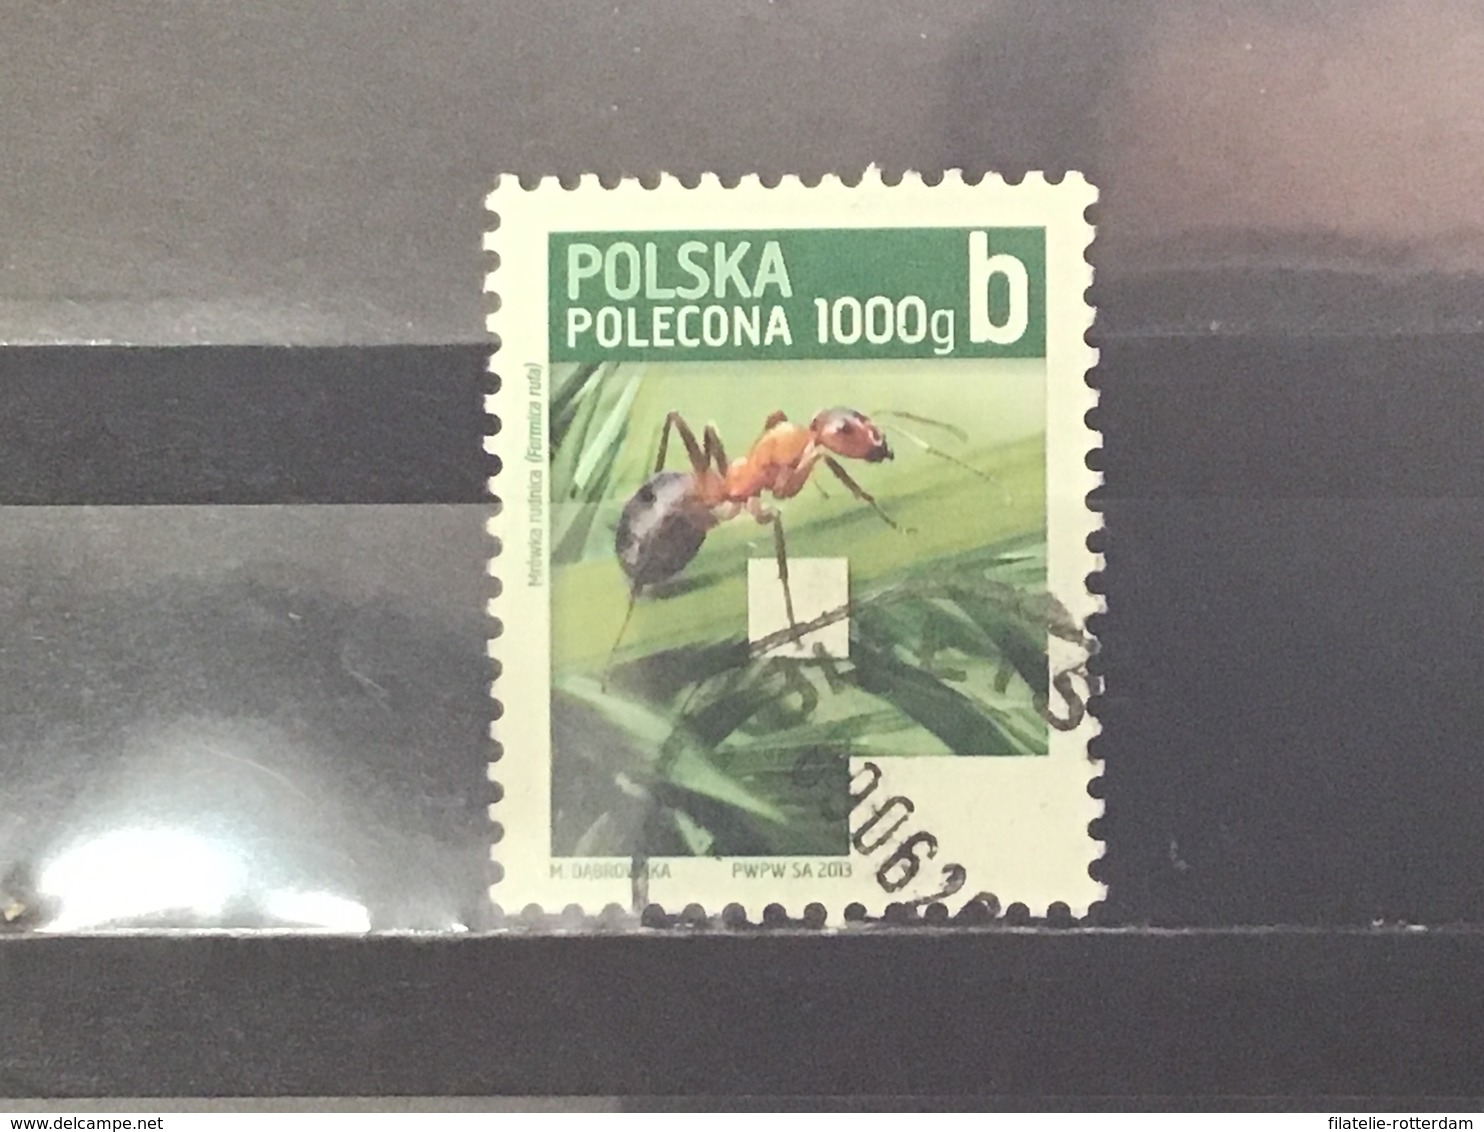 Polen / Poland - Insecten (1000g) 2013 - Gebruikt